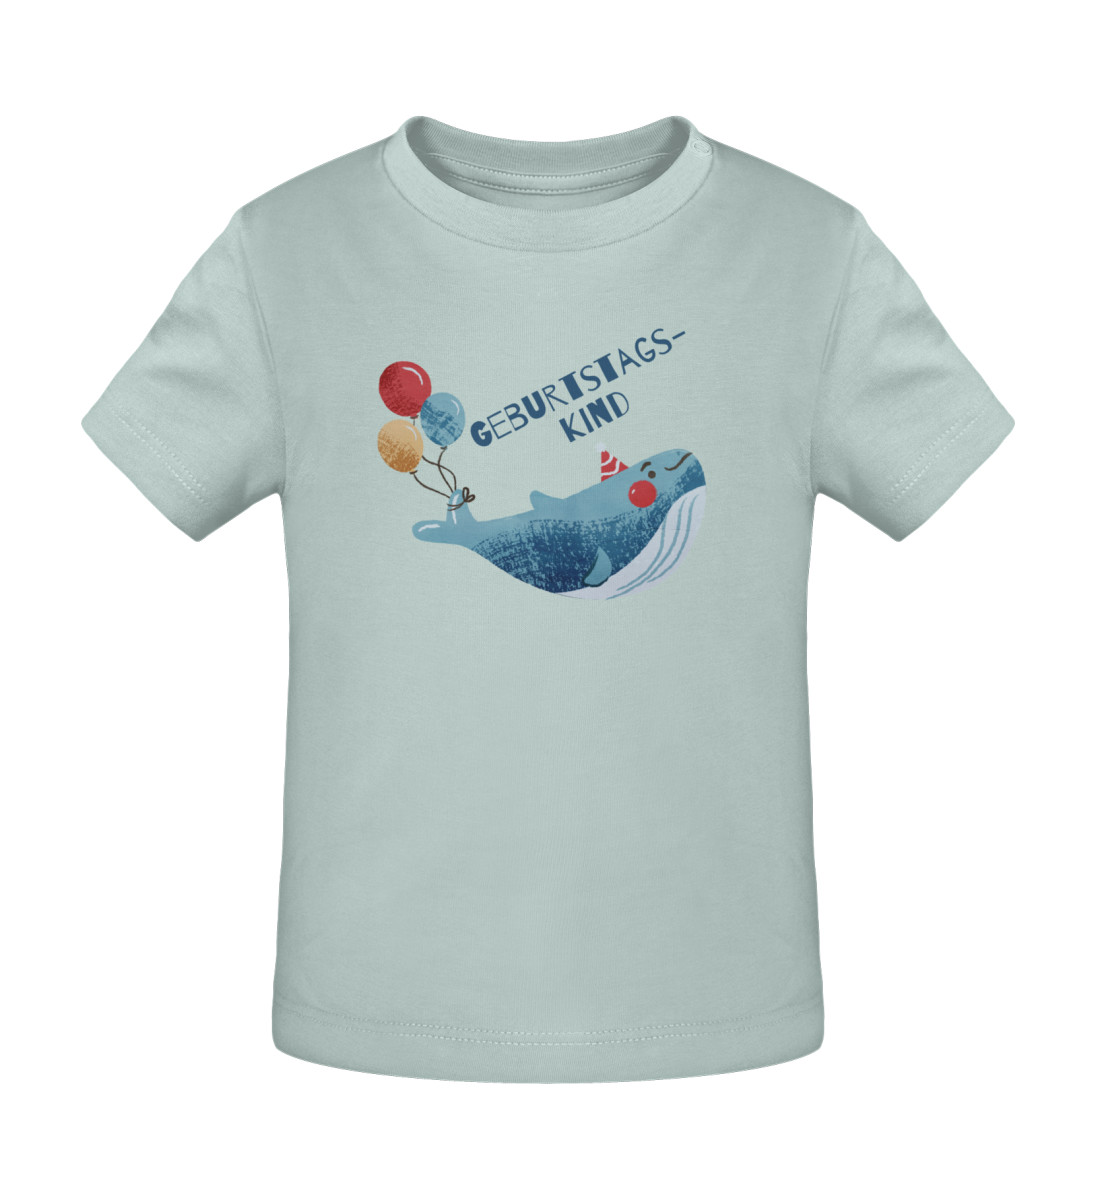 Geburtstagskind - Baby Creator T-Shirt ST/ST-7033